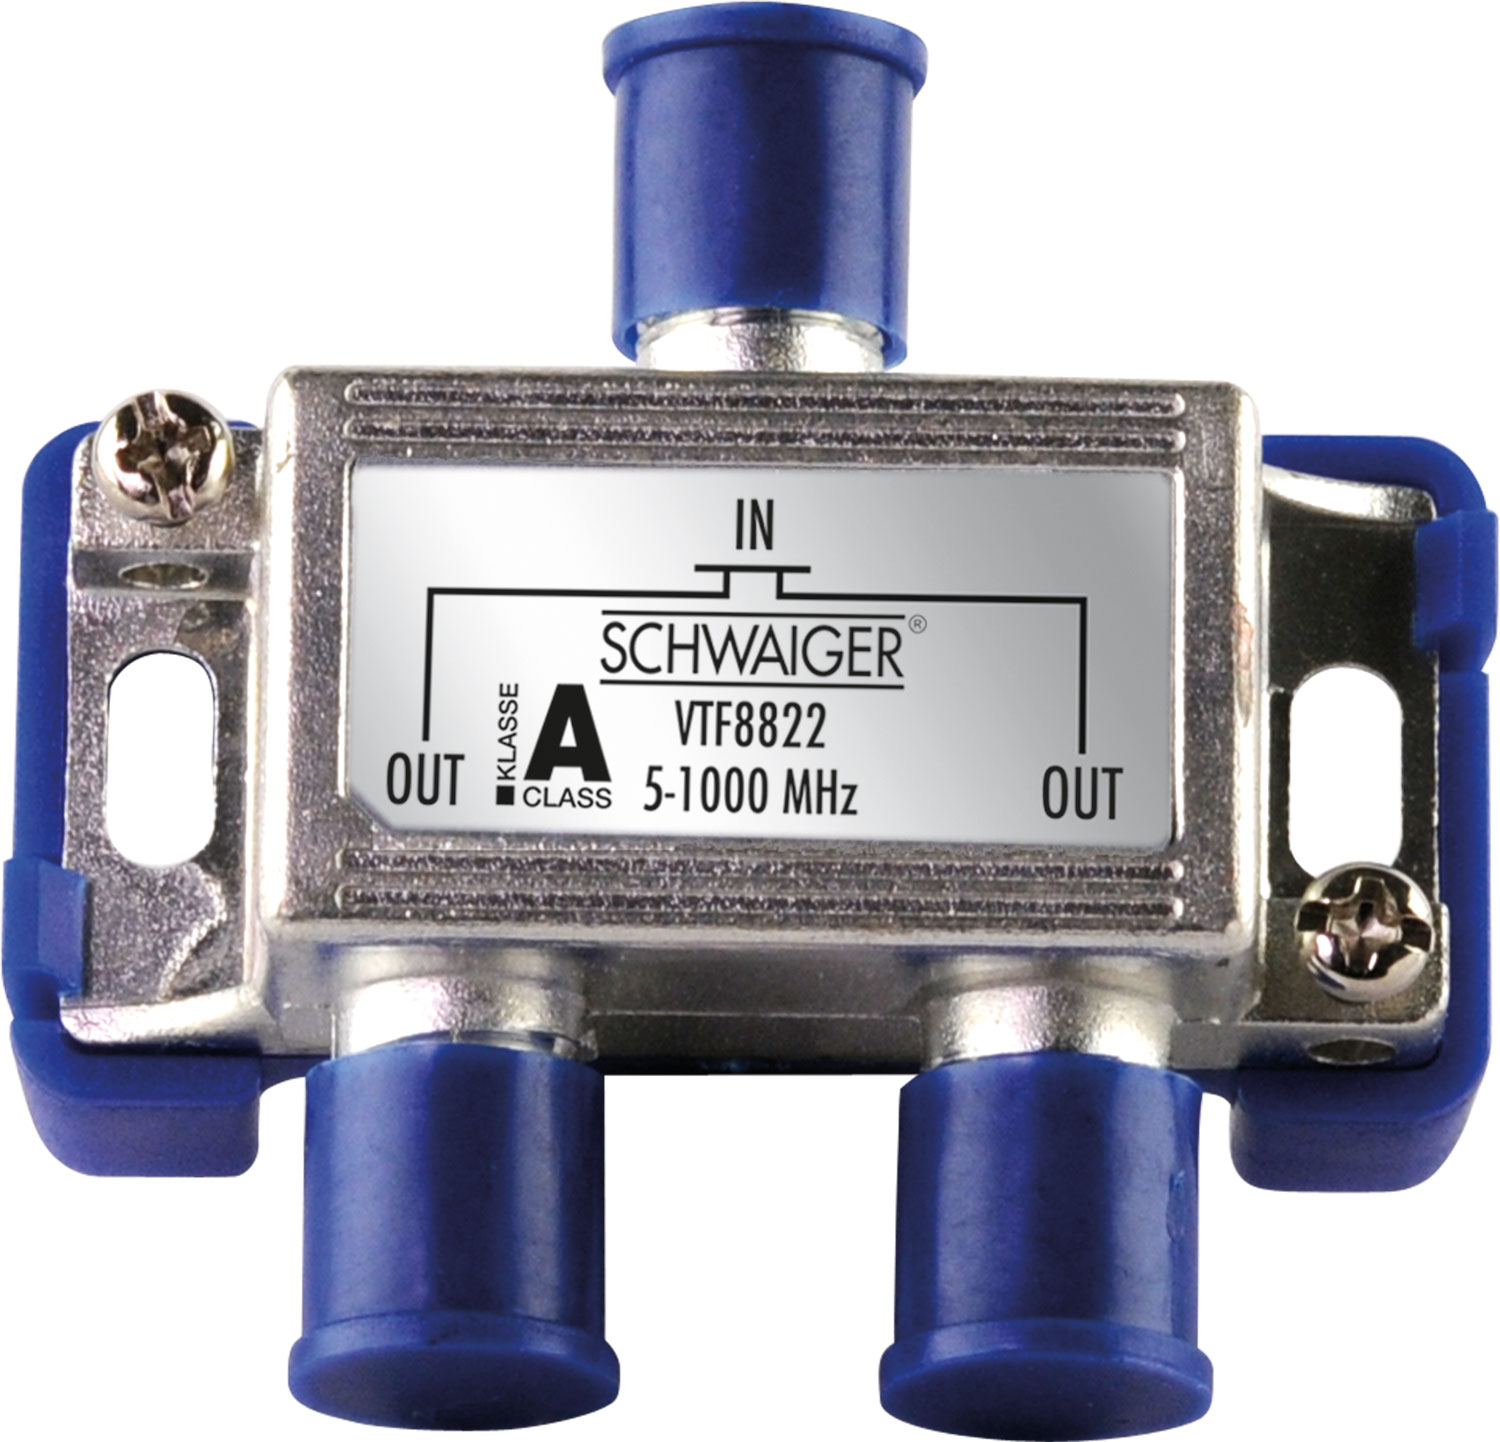 SCHWAIGER -VTF8822 241- 2-fach Verteiler (4 dB) für Kabel- Antennenanlagen und